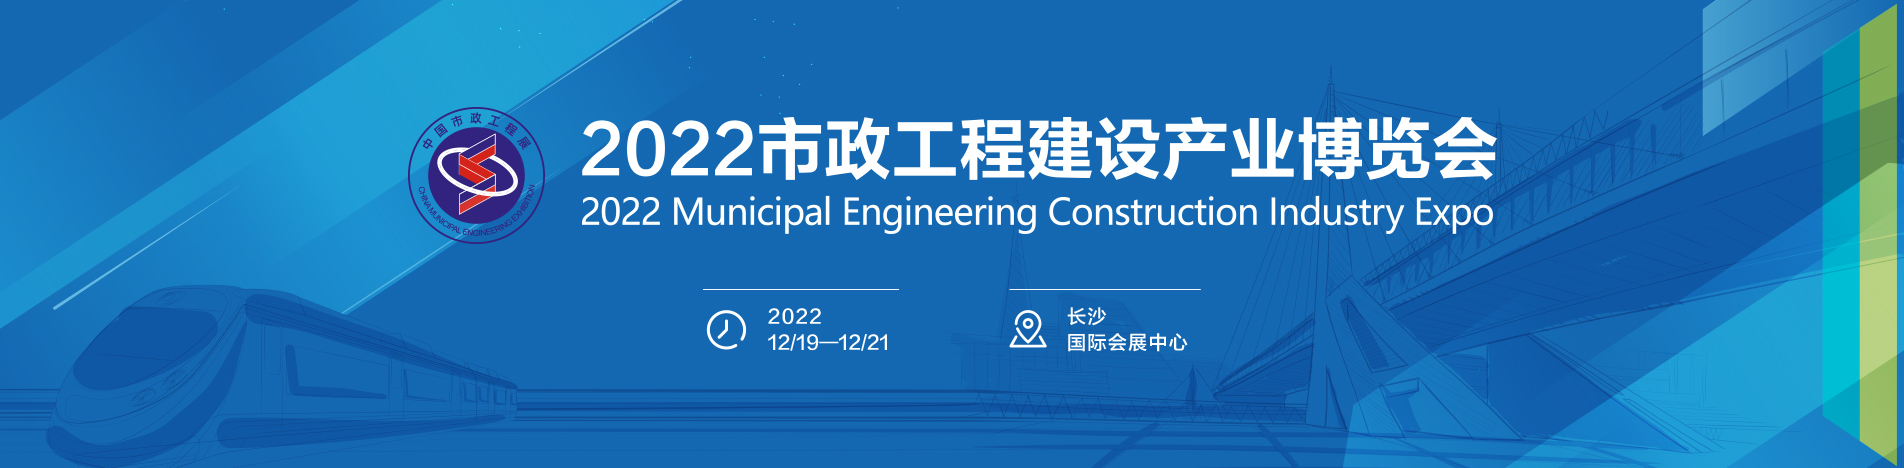 2023中国环卫装备与市政工程展览会-以数字化赋能公共服务升级 助推城市环卫发展